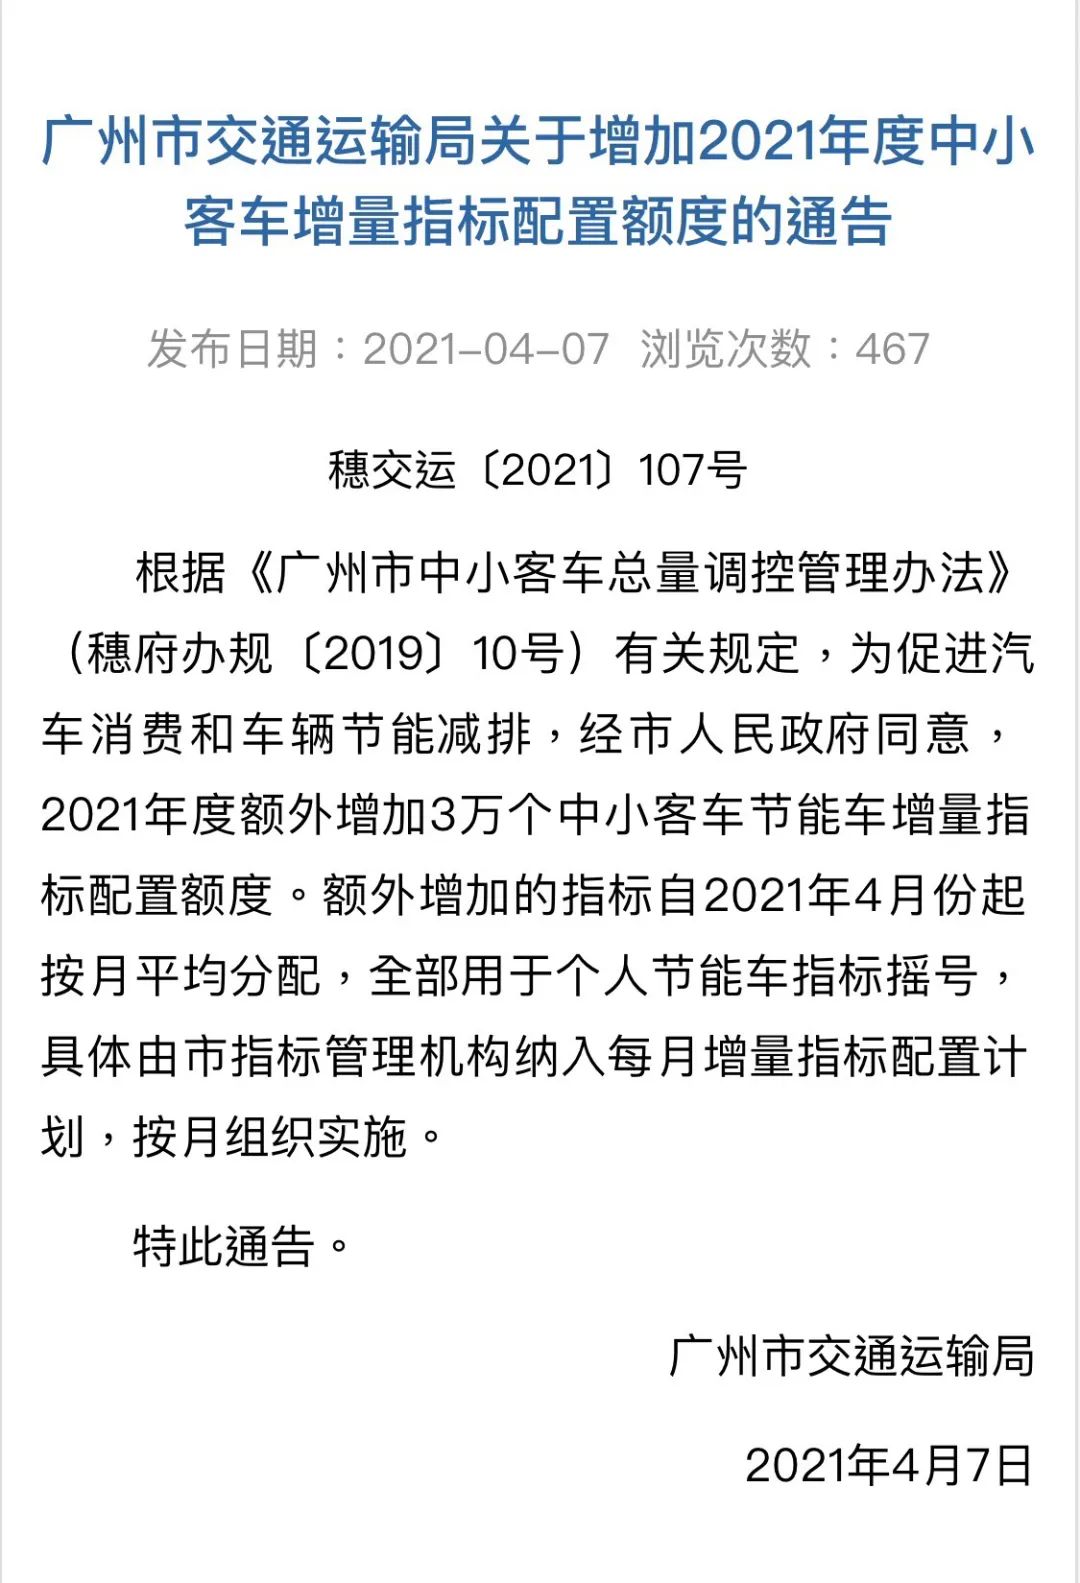 2021年广州将额外增加3万个中小客车增量指标